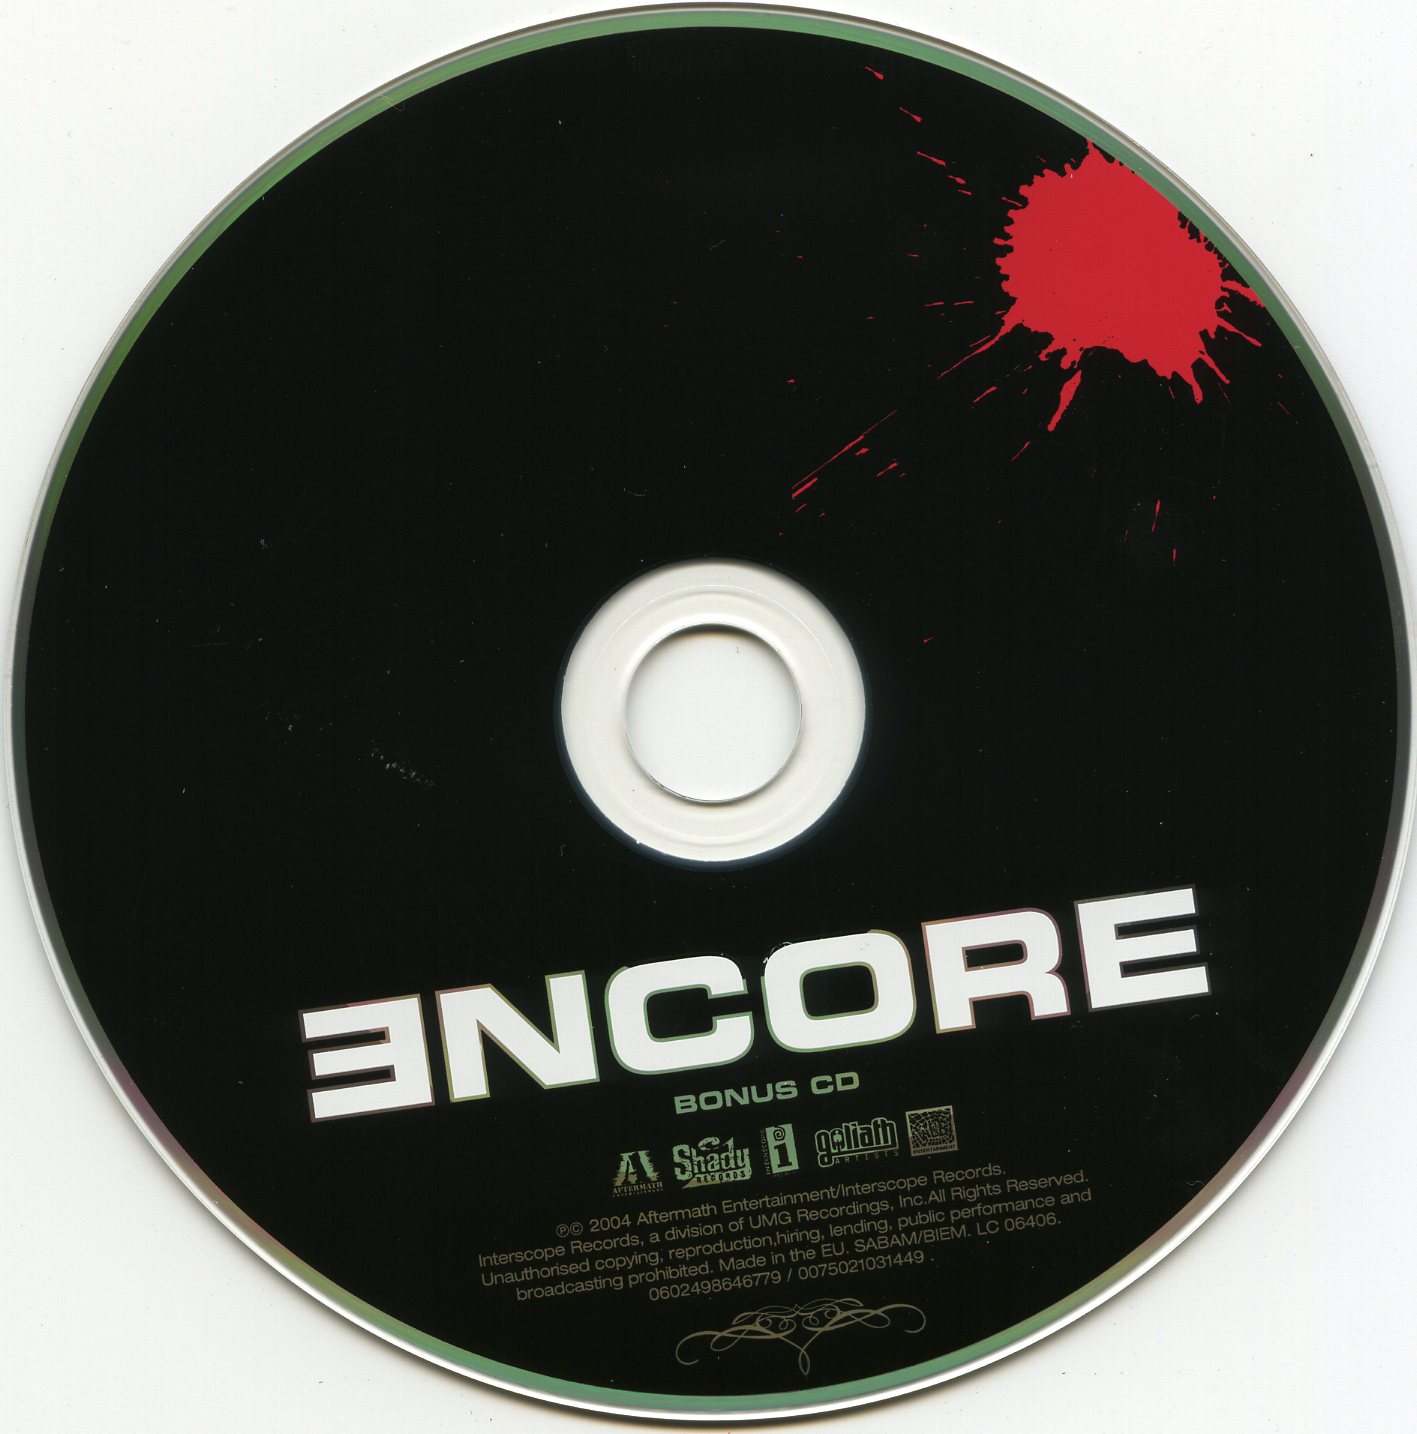 1996 - Eminem - Infinite.